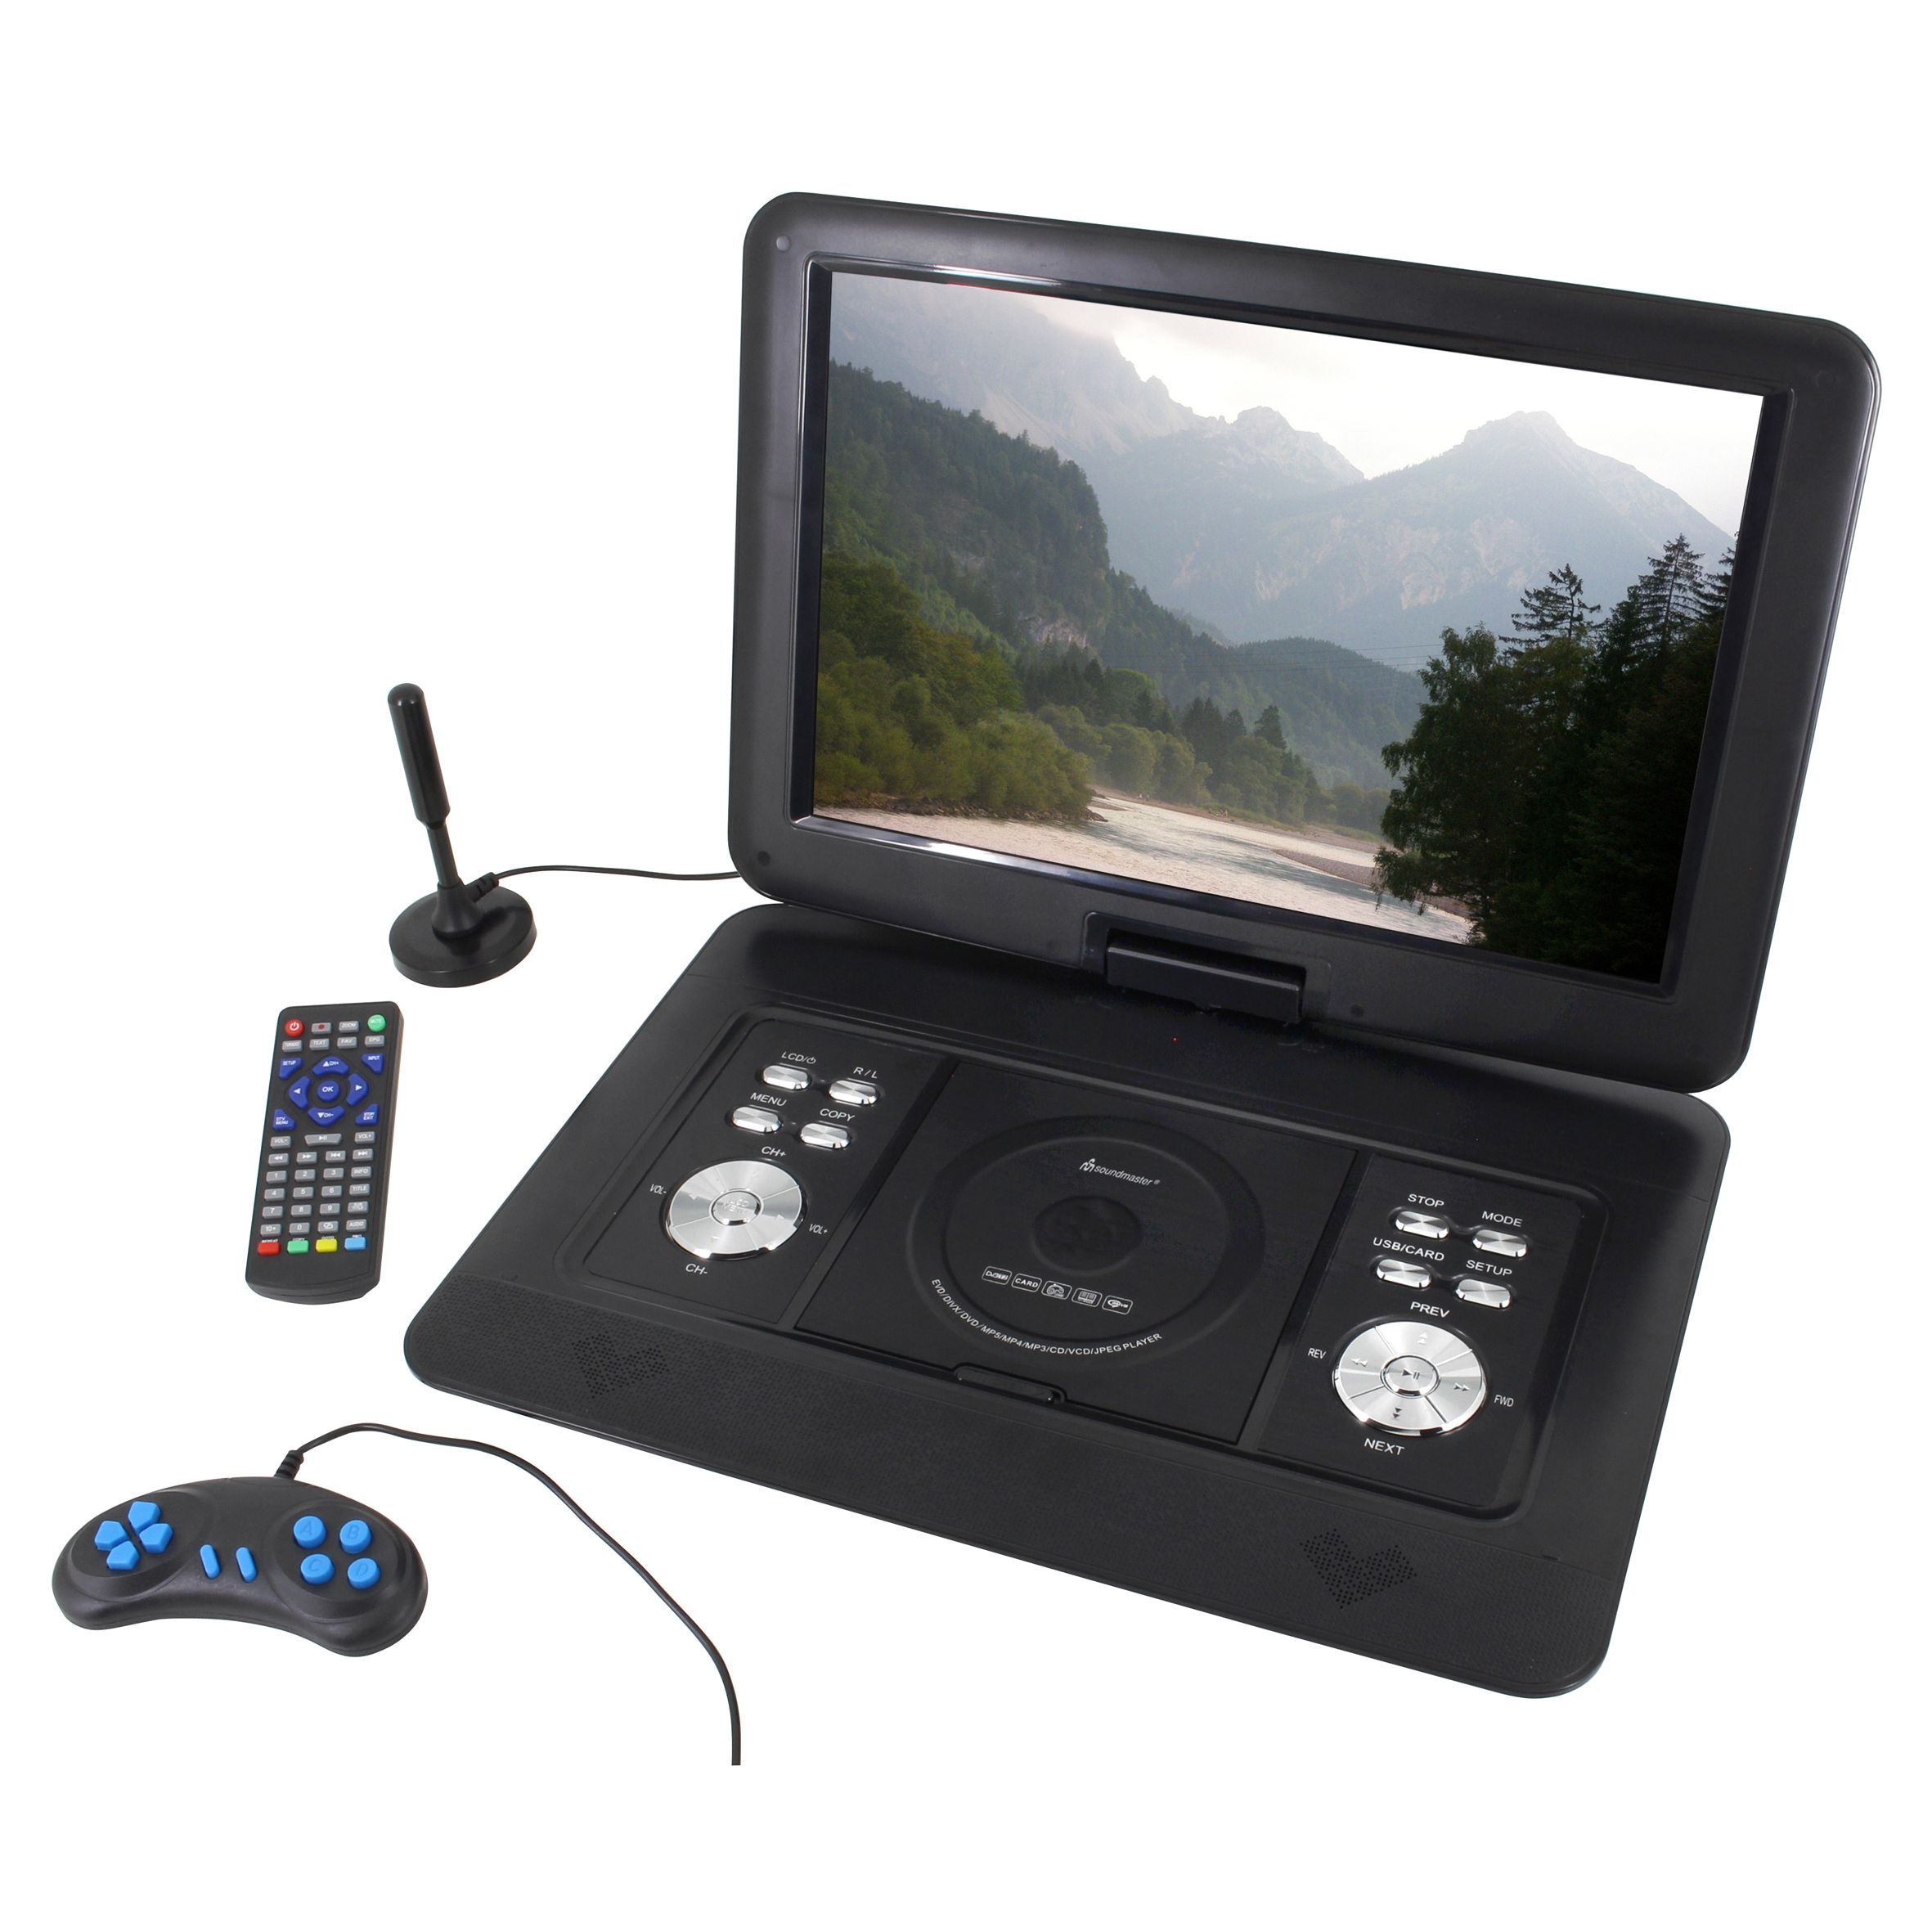 Oefening kan niet zien adviseren Soundmaster PDB1600SW Portable DVD speler met DVB-T2 HD-tuner- Met deze  Soundmaster PDB1600SW portable DVD-speler bekijkt u